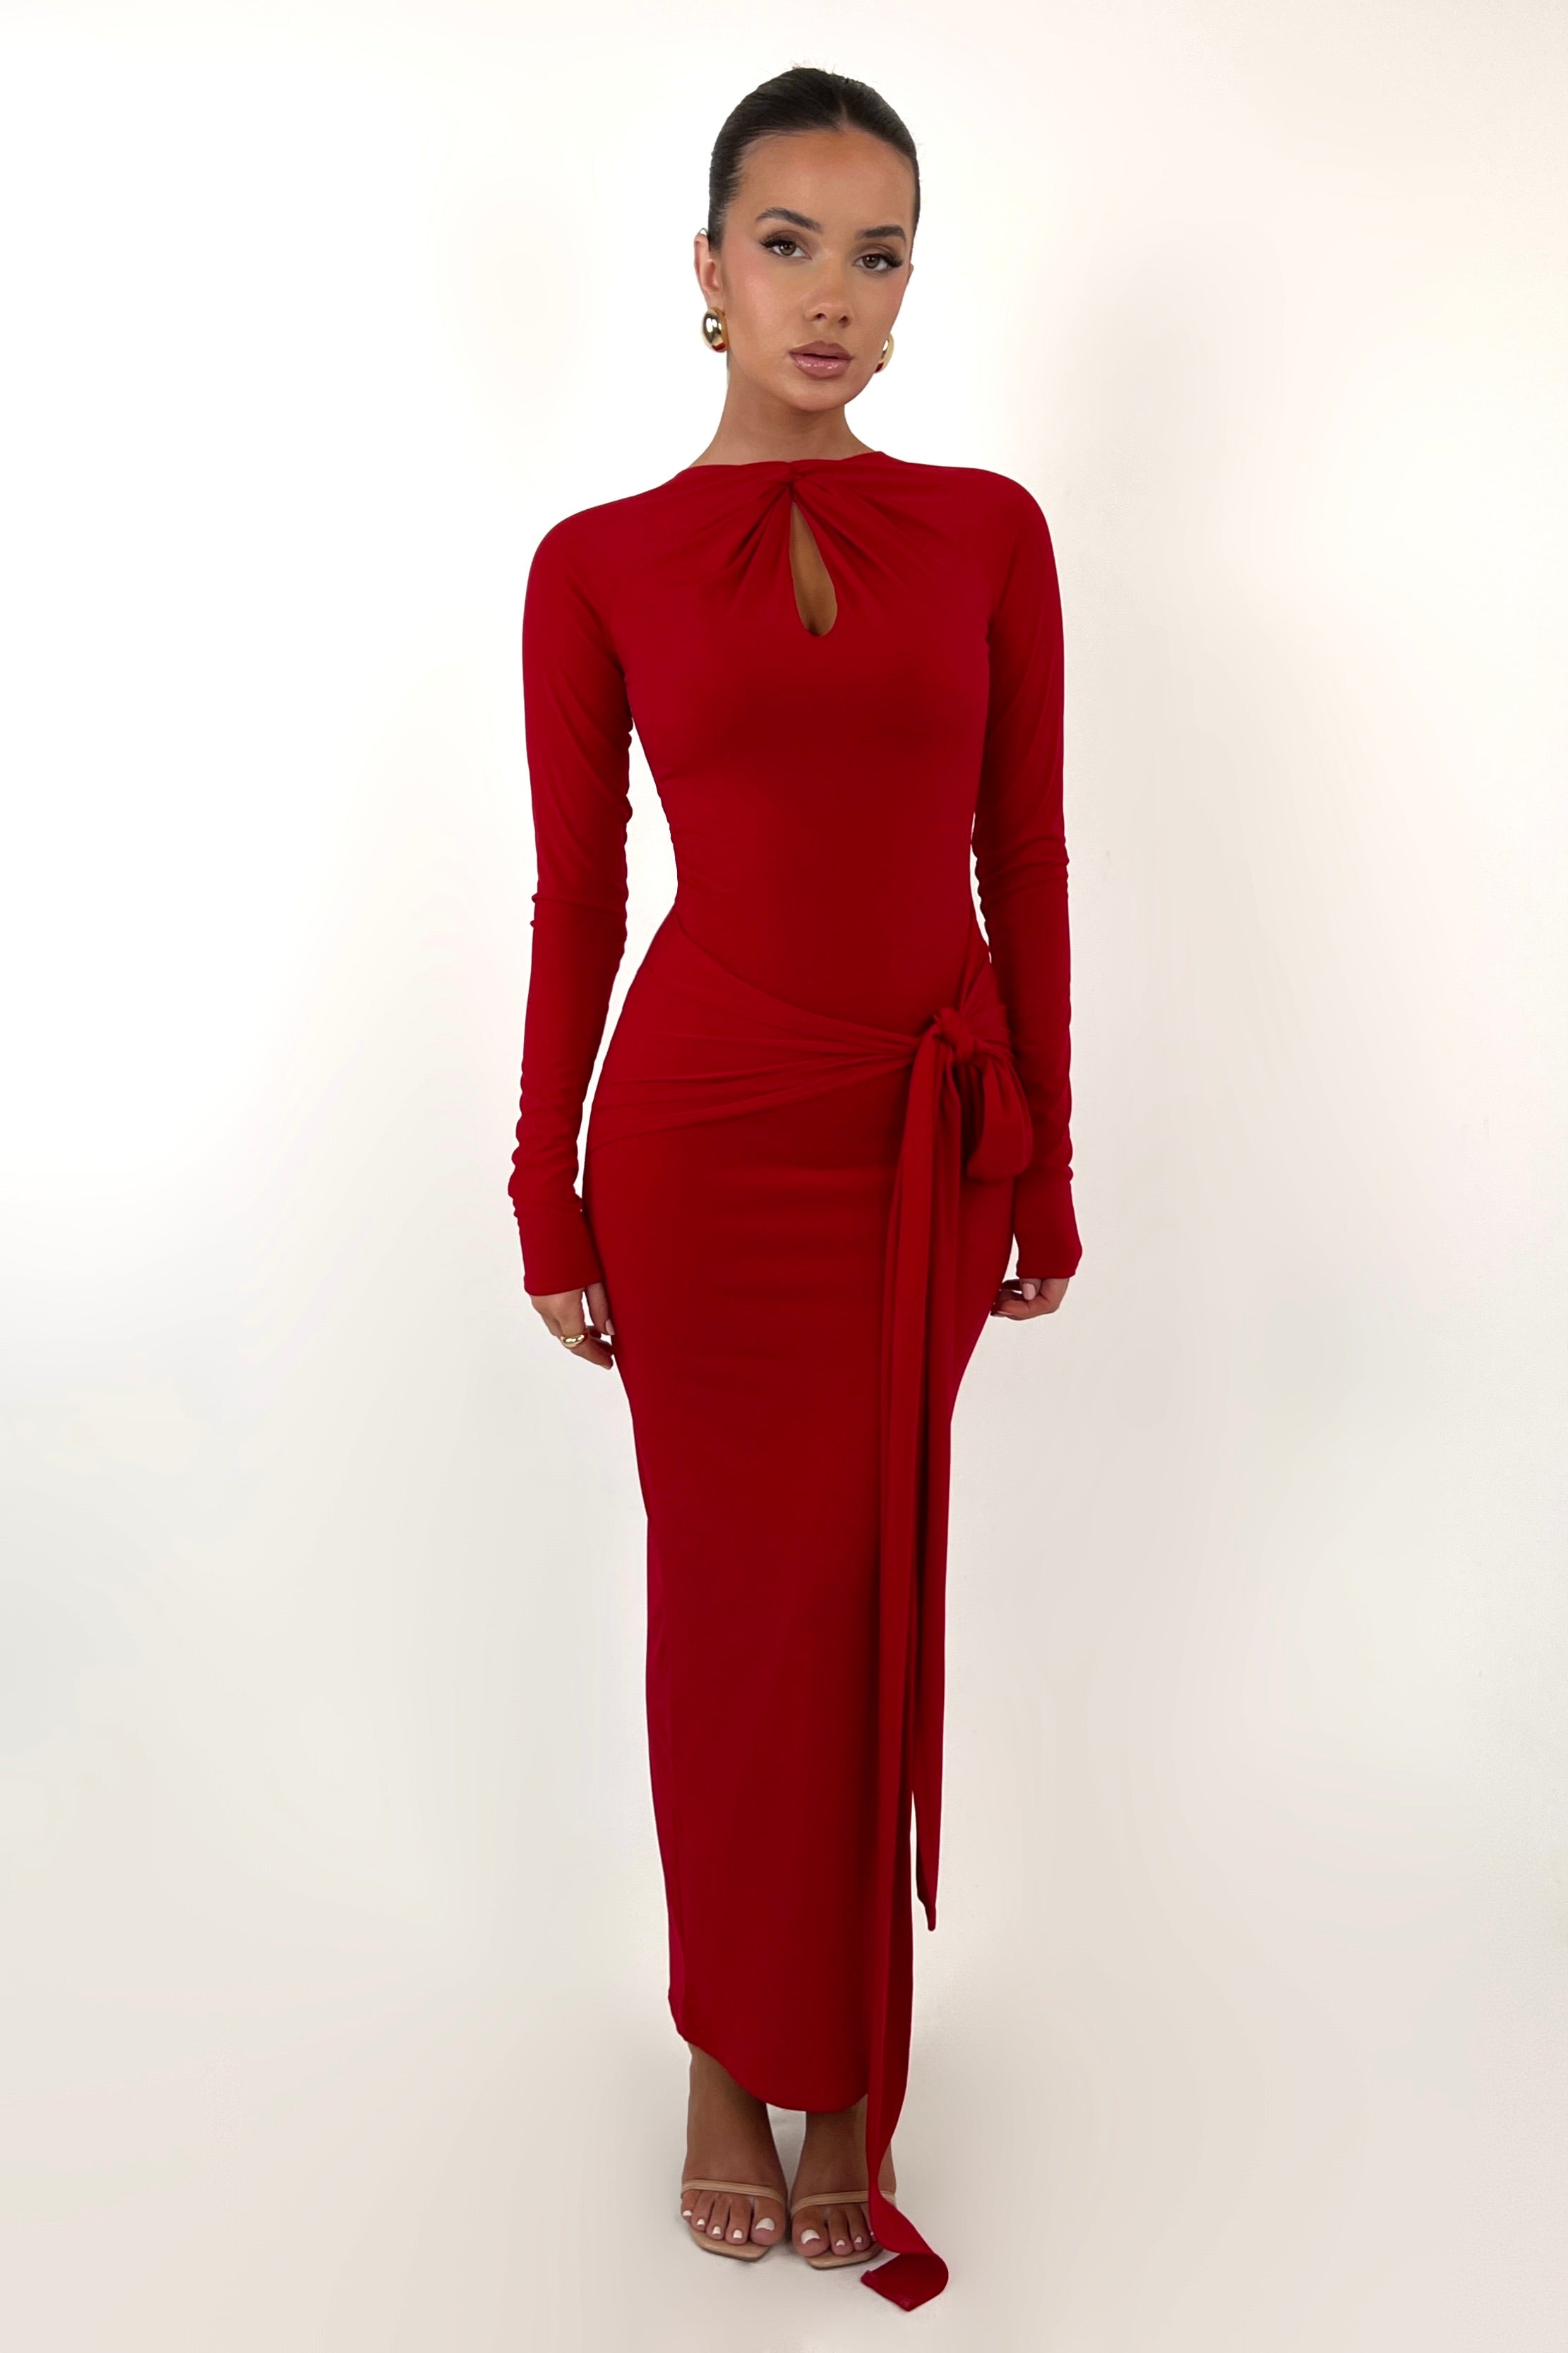 Seonie Red Dress